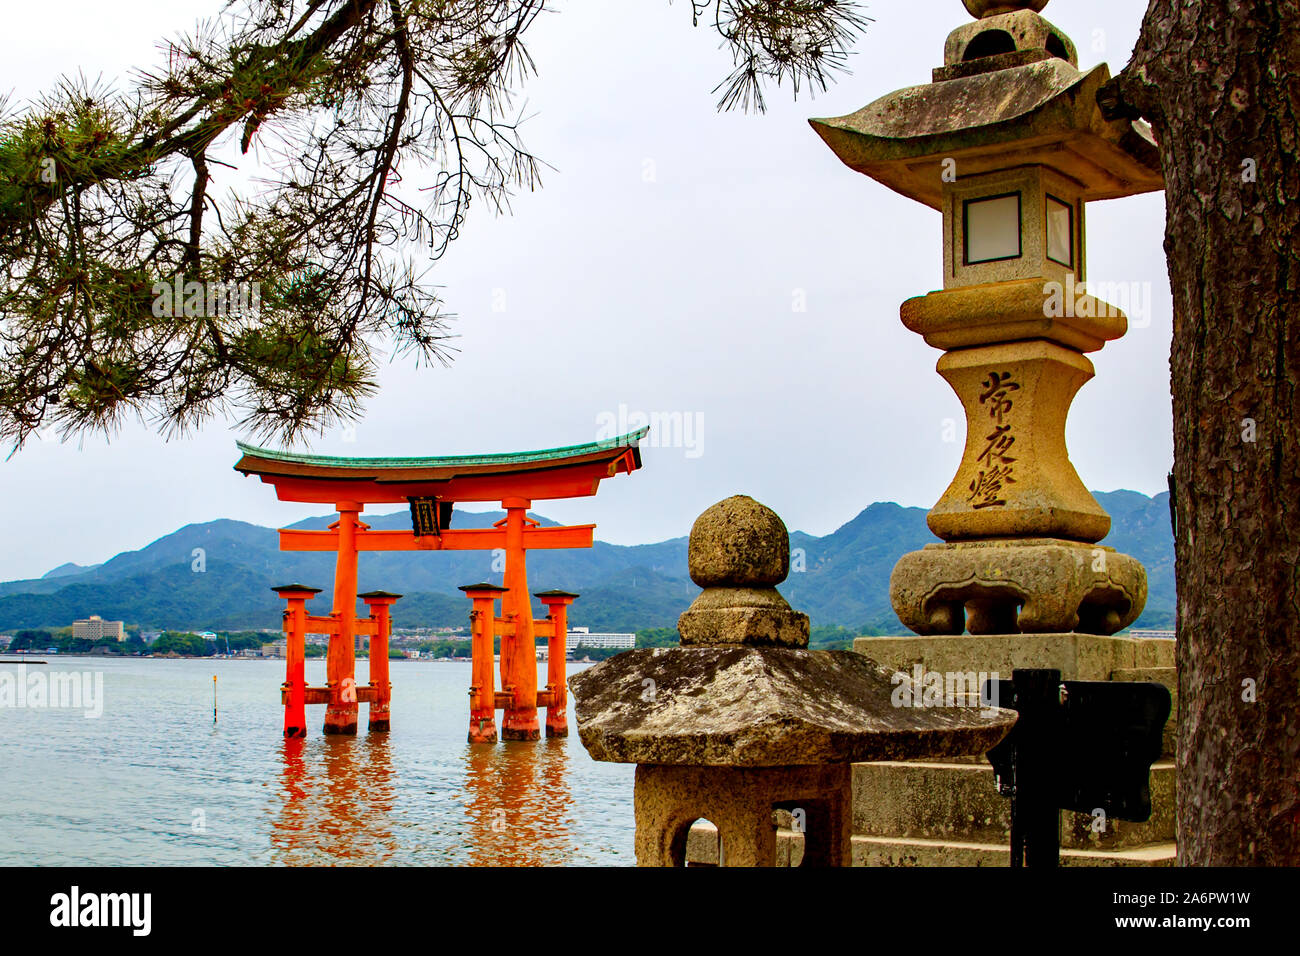 Japanese stone lanterns with the floating torii gate of Itsukushima Shrine in the sea off Miyajima Island, Japan Stock Photo